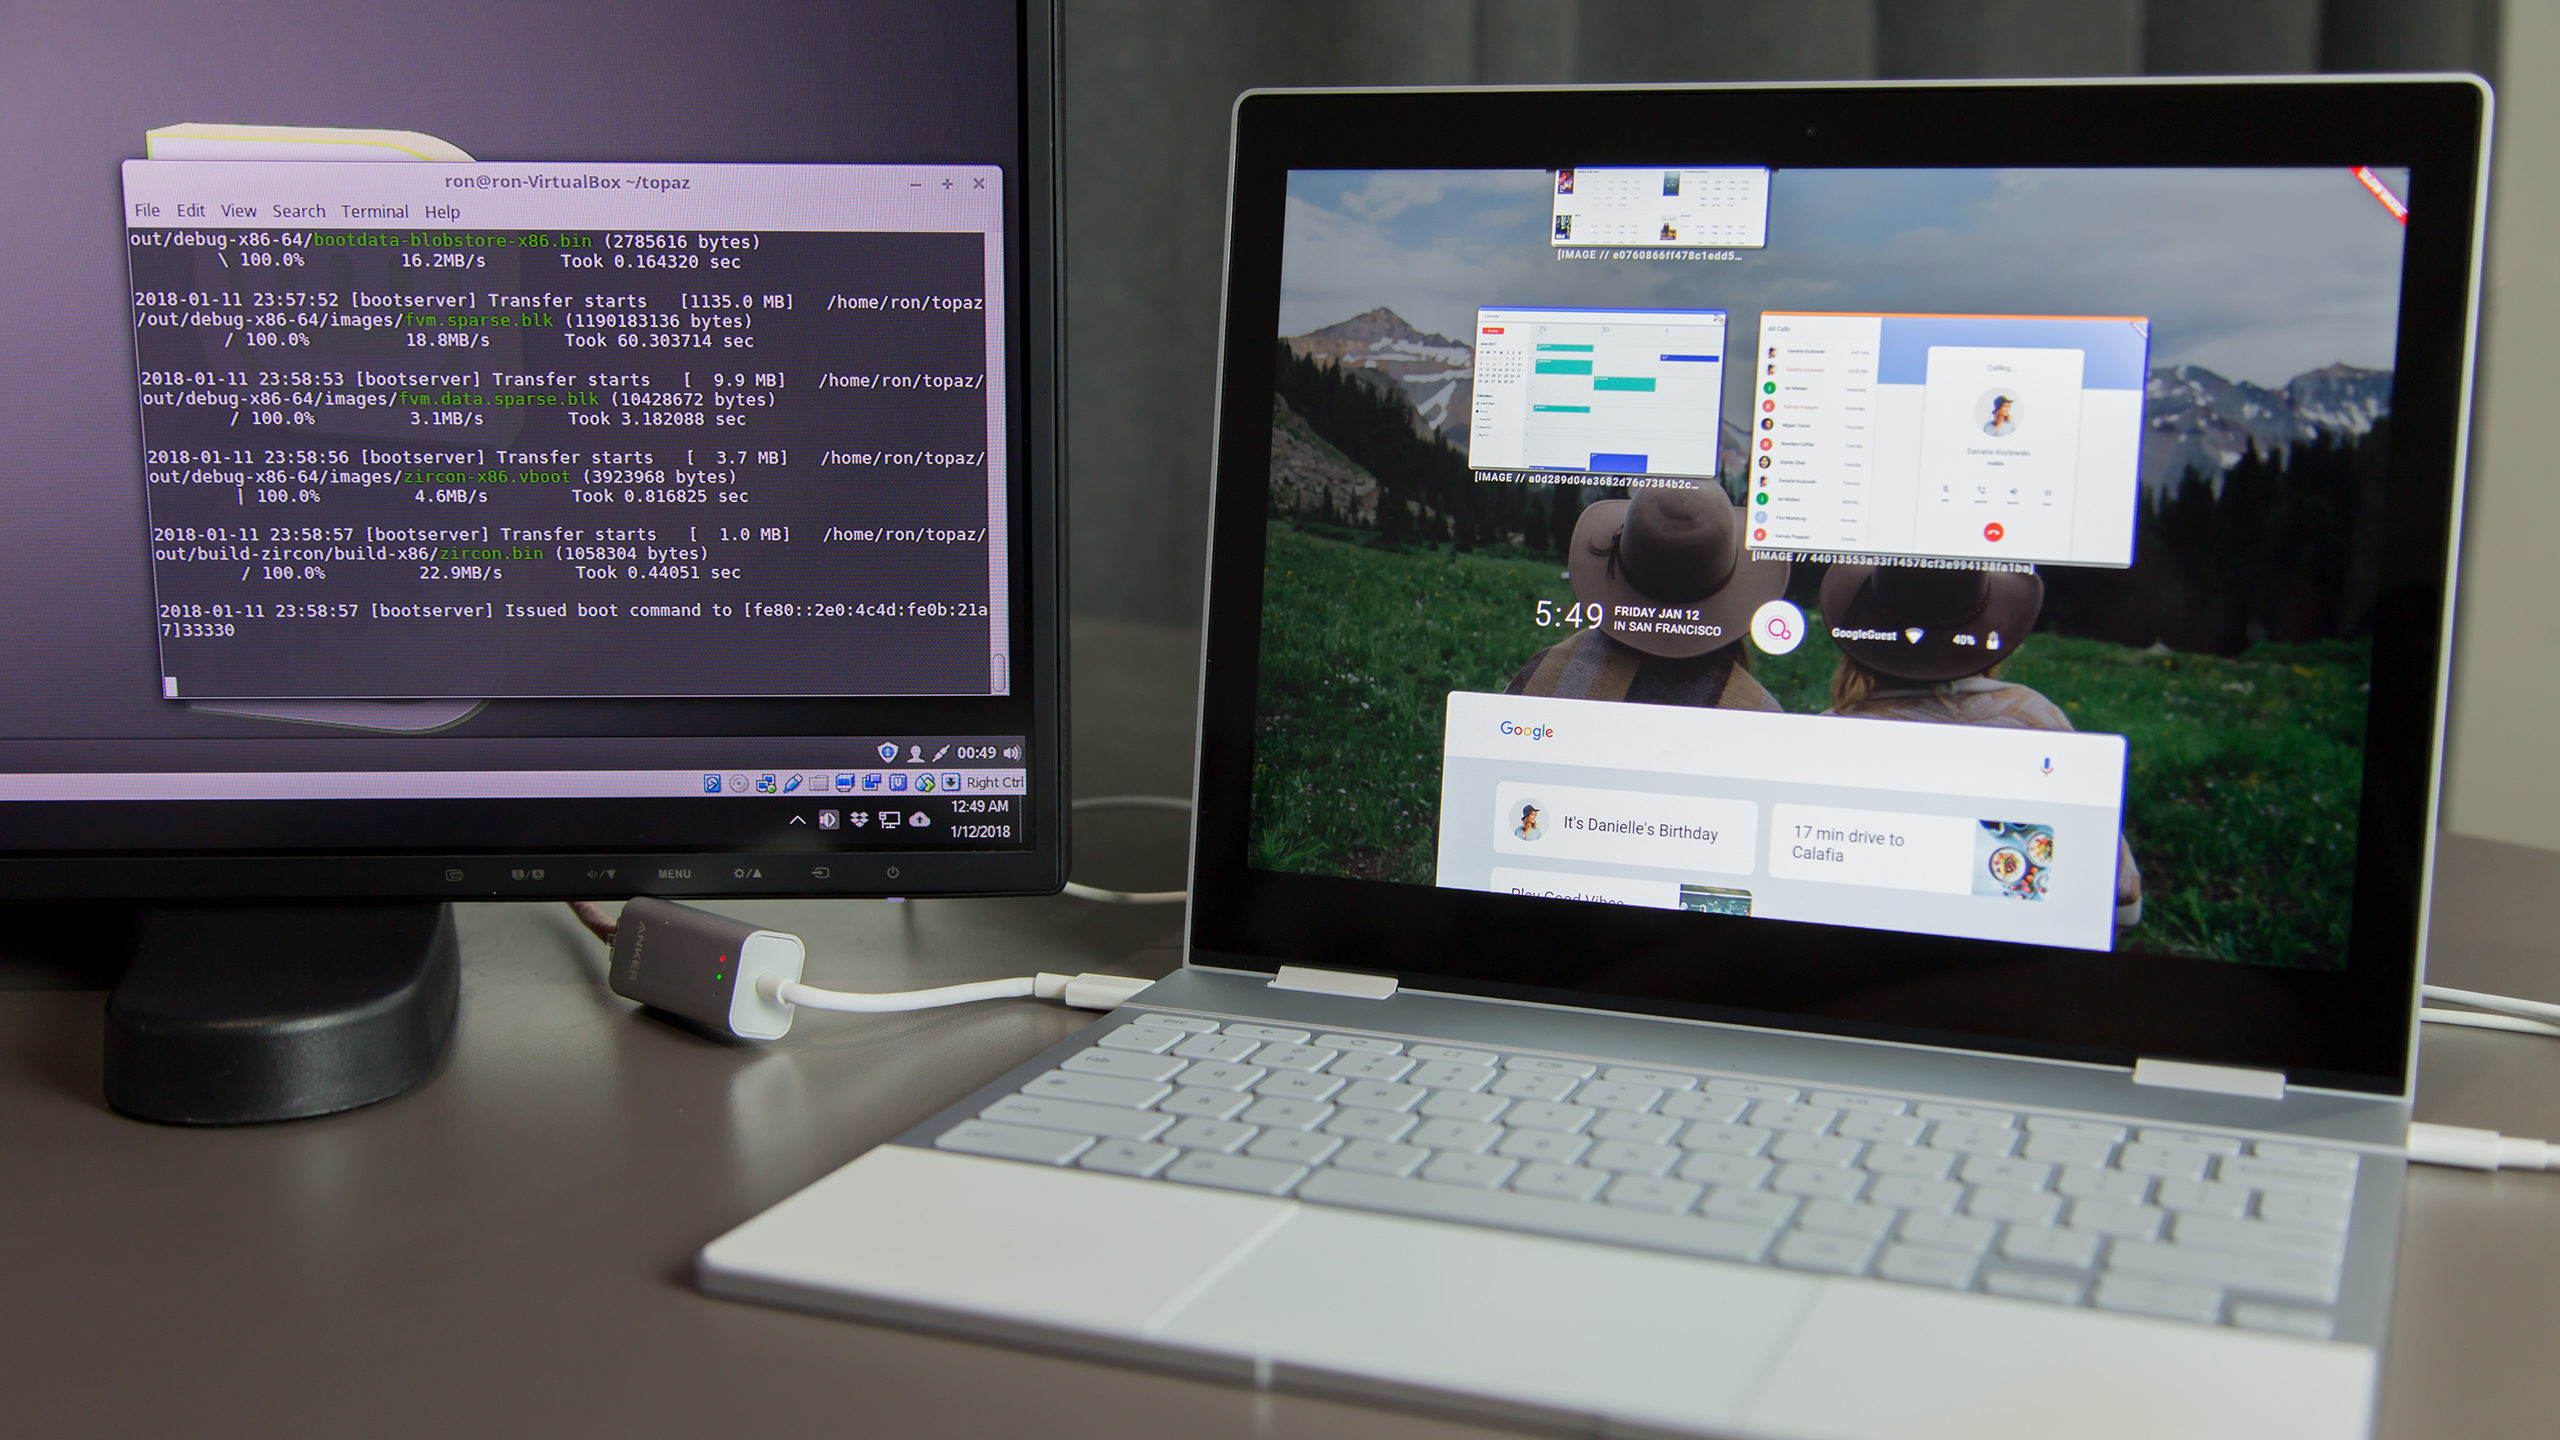 Google Nest Hub com sistema Fuchsia 1.0 recebe certificação Bluetooth | Gadgets